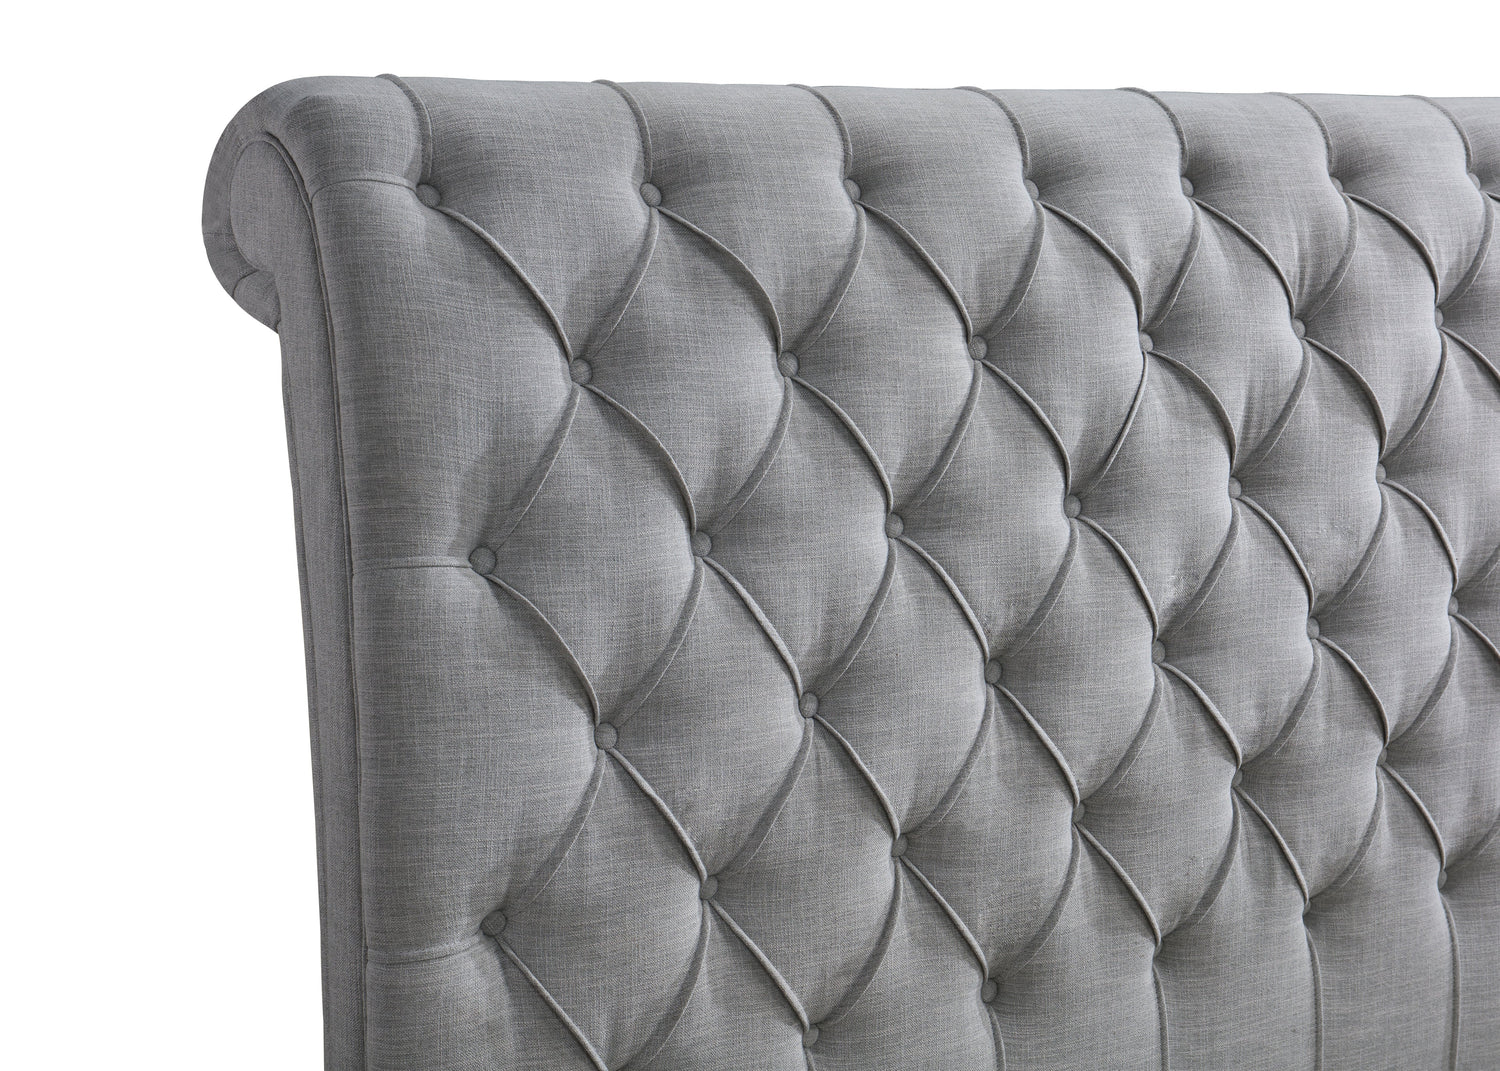 Kate Gray King Upholstered Sleigh Platform Bed - SET | 5103-K-HB | 5103-K-FB | 5103-KQ-RAIL - Bien Home Furniture &amp; Electronics